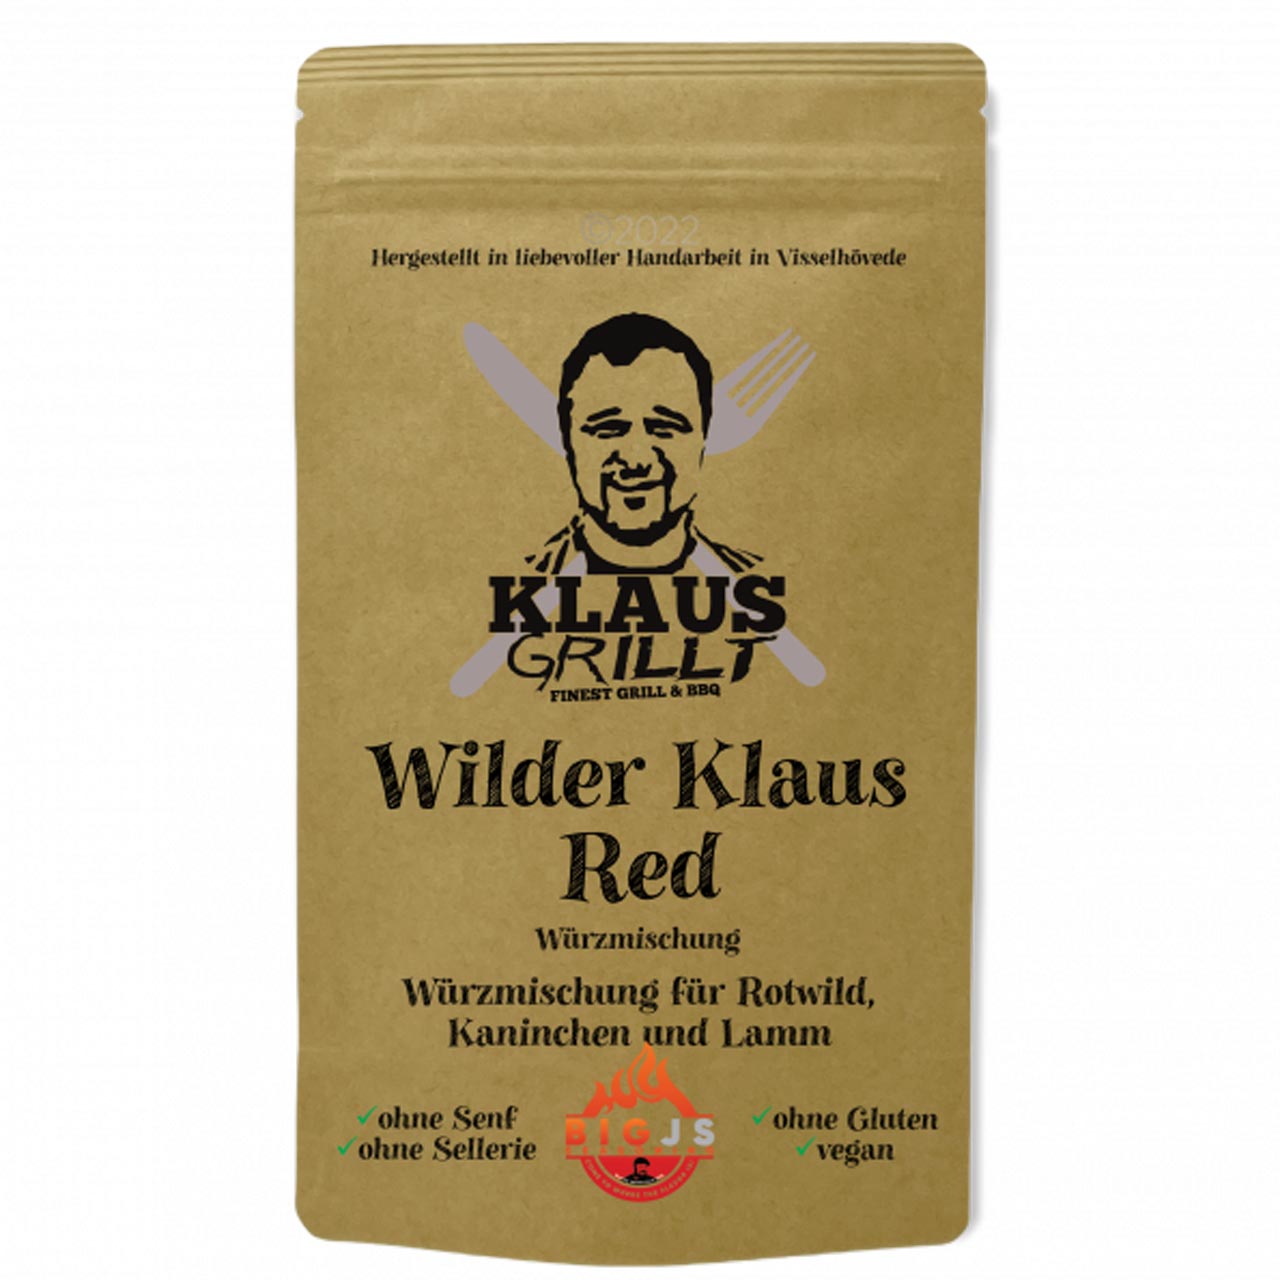 Klaus Grillt - Wilder Klaus Red 150 g Standbeutel